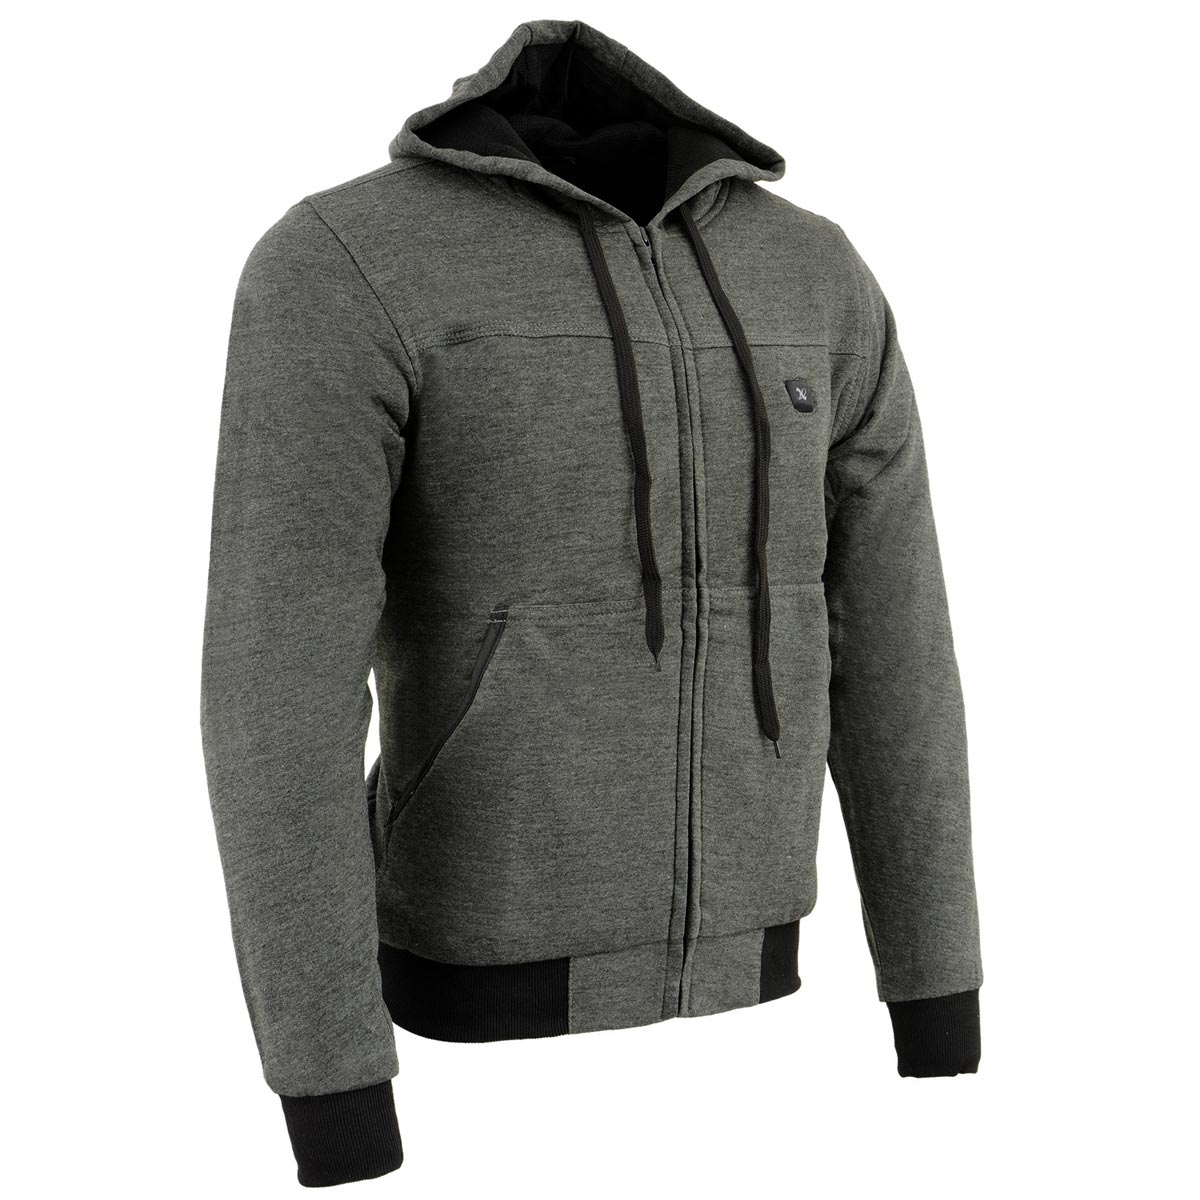 Nexgen Heat MPM1713SET12v Men's Grey 'Heated' Front Zipper Hoodie Jacket for Outdoor Activities w/ Battery Pack